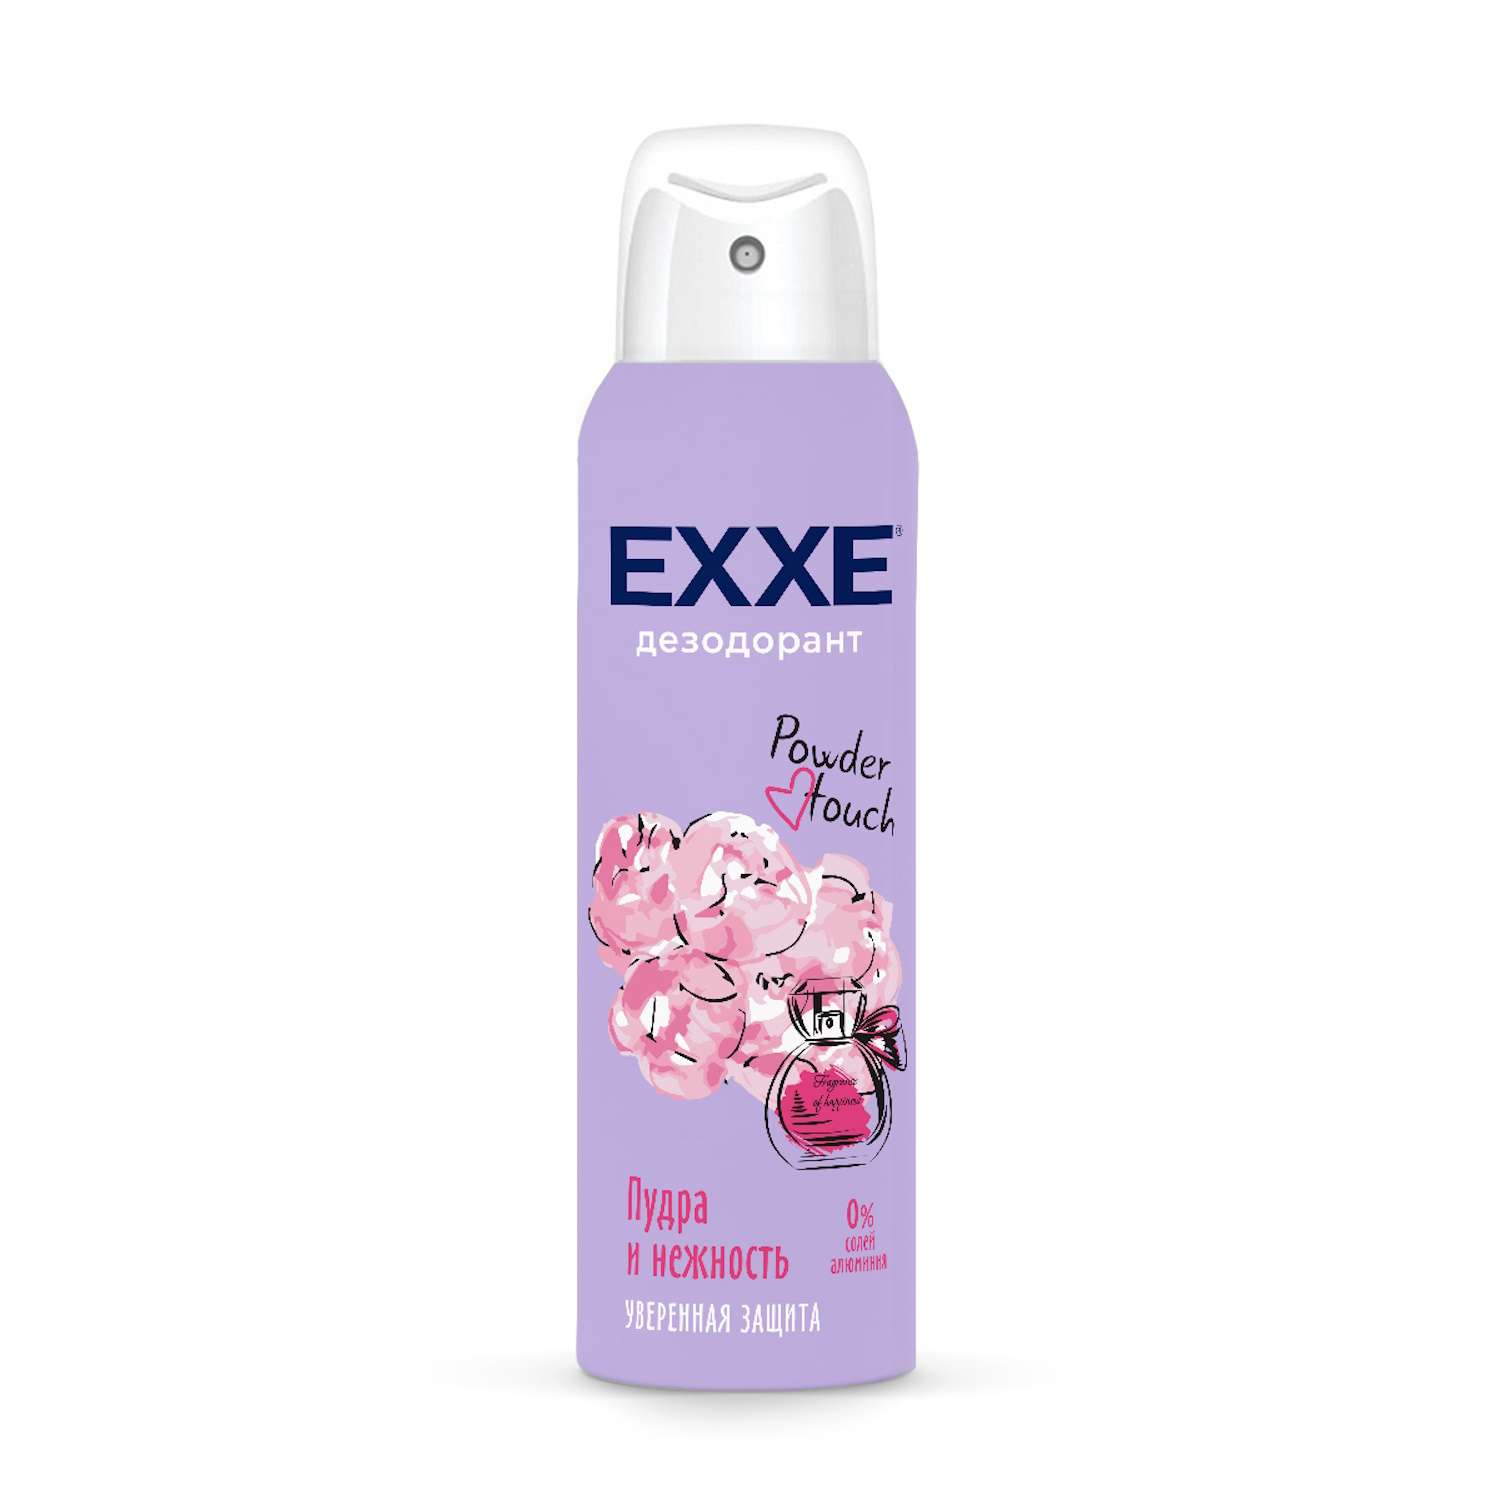 Дезодорант Exxe Powder touch Пудра и нежность женский спрей 150мл - фото 1